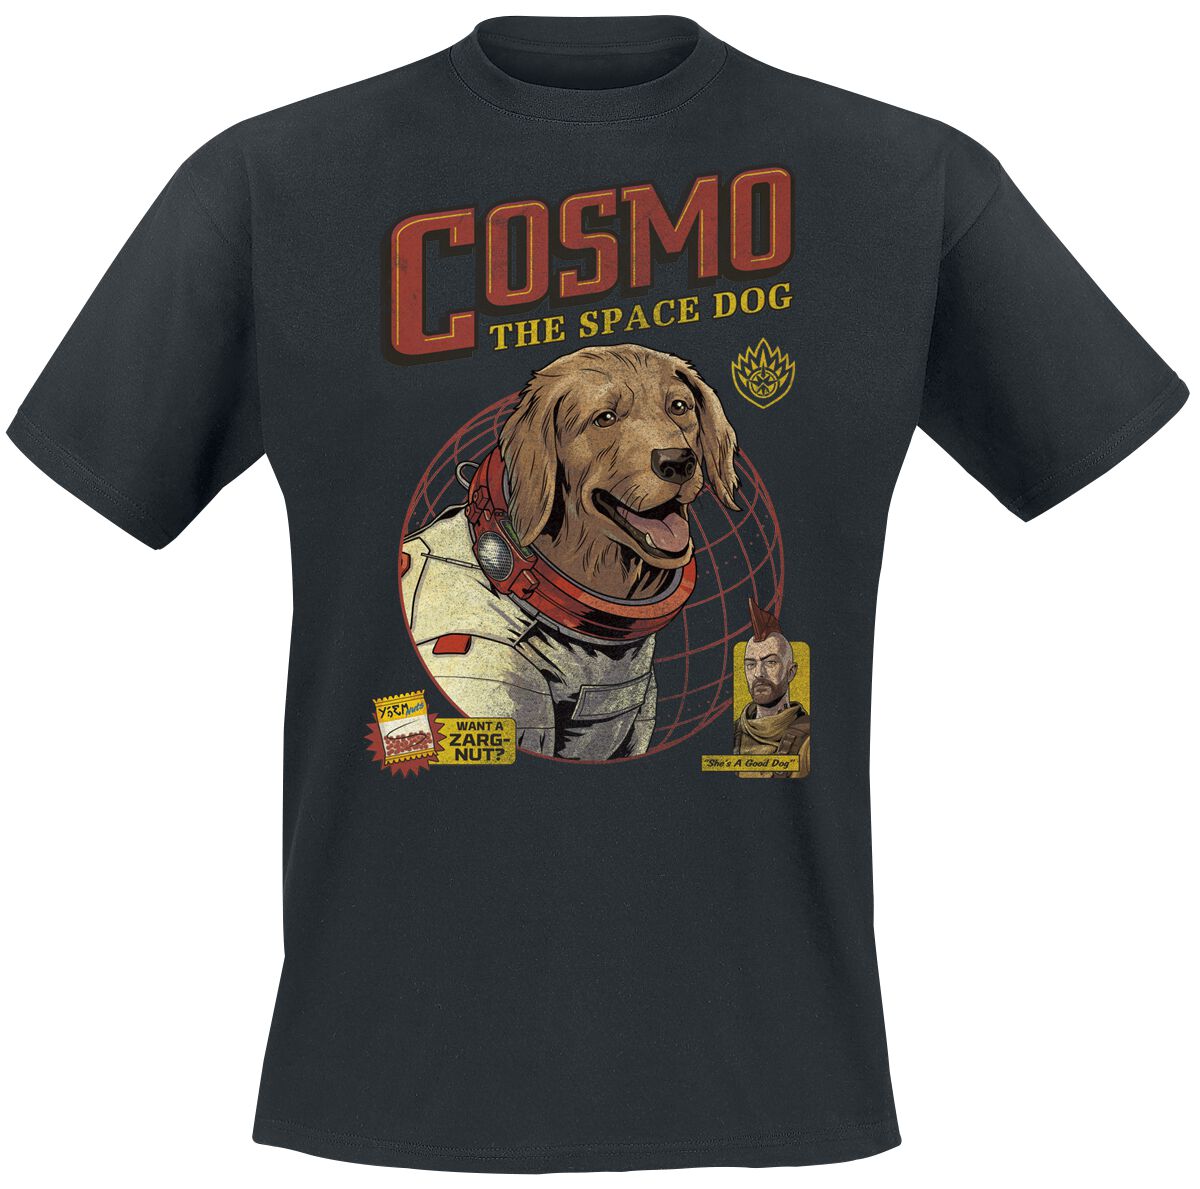 Guardians Of The Galaxy - Marvel T-Shirt - Vol. 3 - Cosmo -The Space Dog - S bis XXL - für Männer - Größe M - schwarz  - EMP exklusives Merchandise!